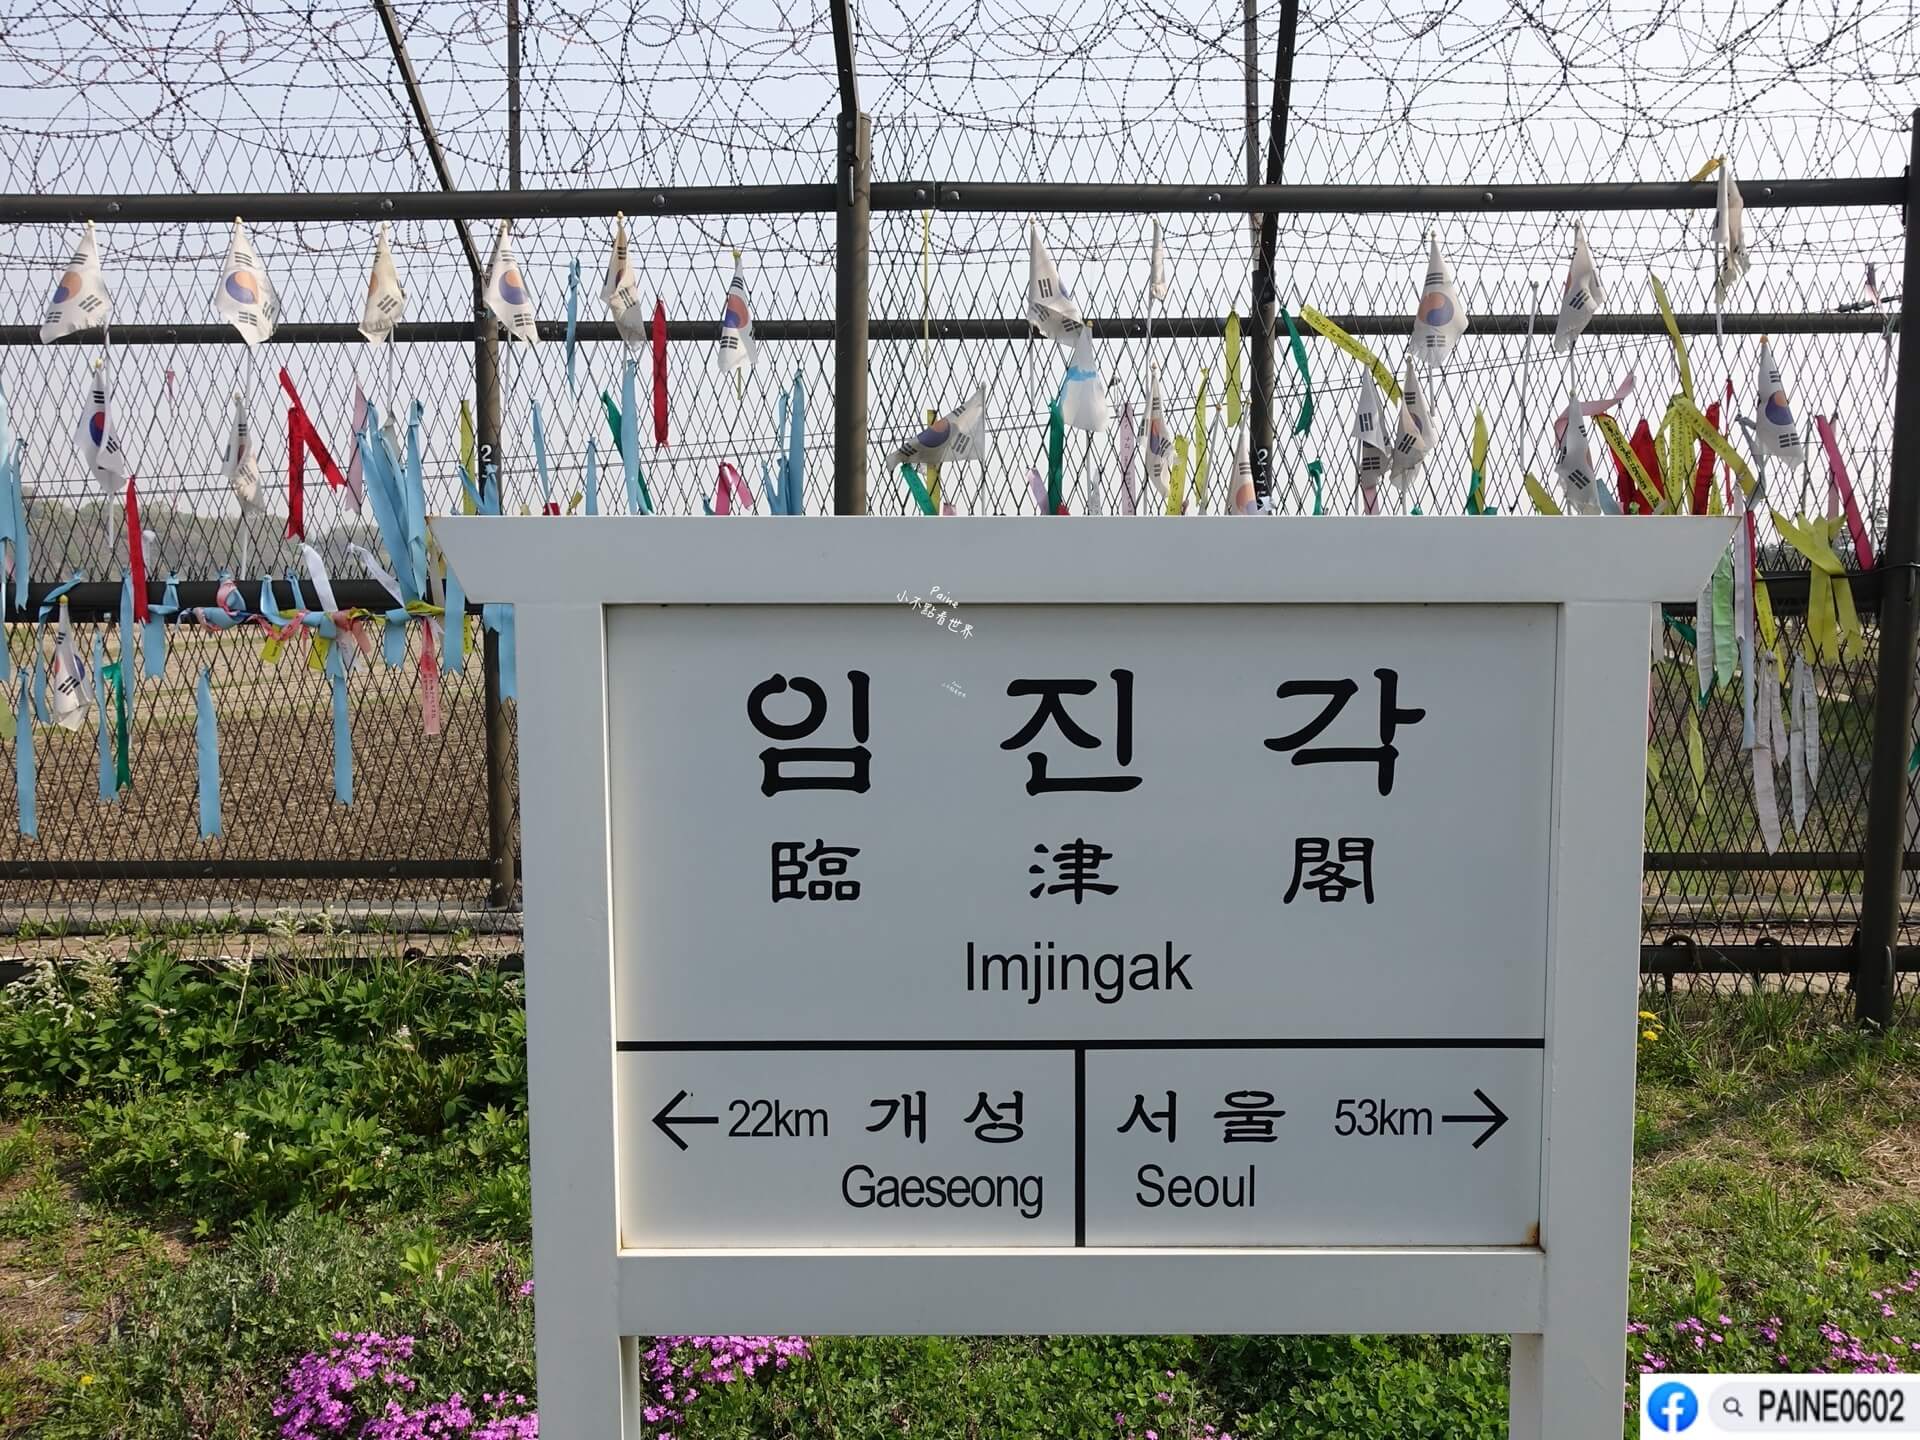 韓國DMZ 非武裝地帶 一日團